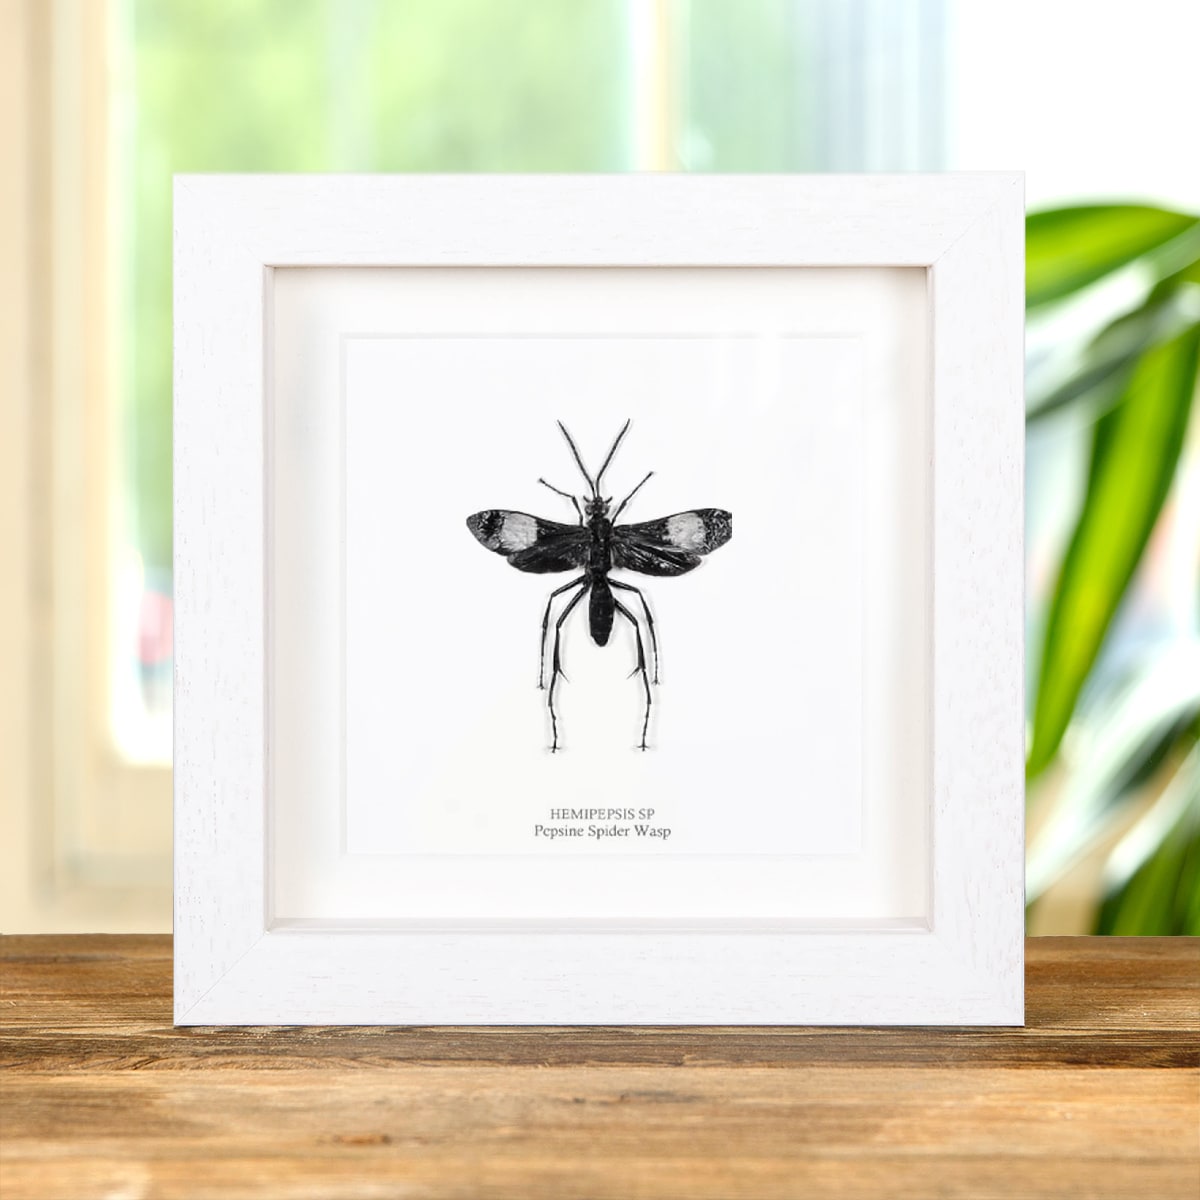 Pepsine Spider Wasp in Box Frame (Hemipepsis sp)